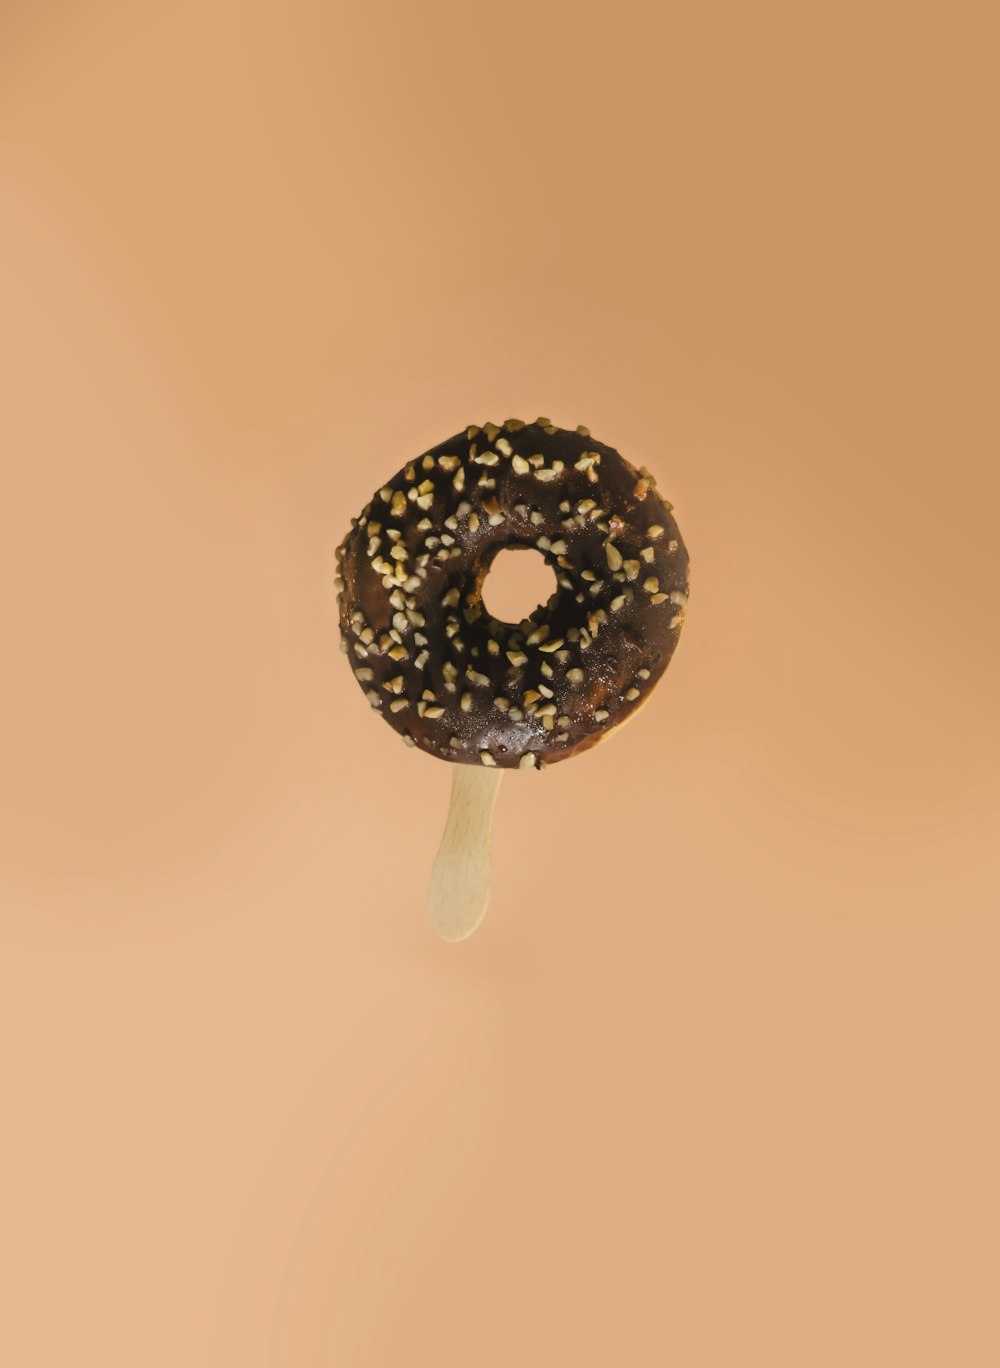 um donut de chocolate com polvilhos em uma vara